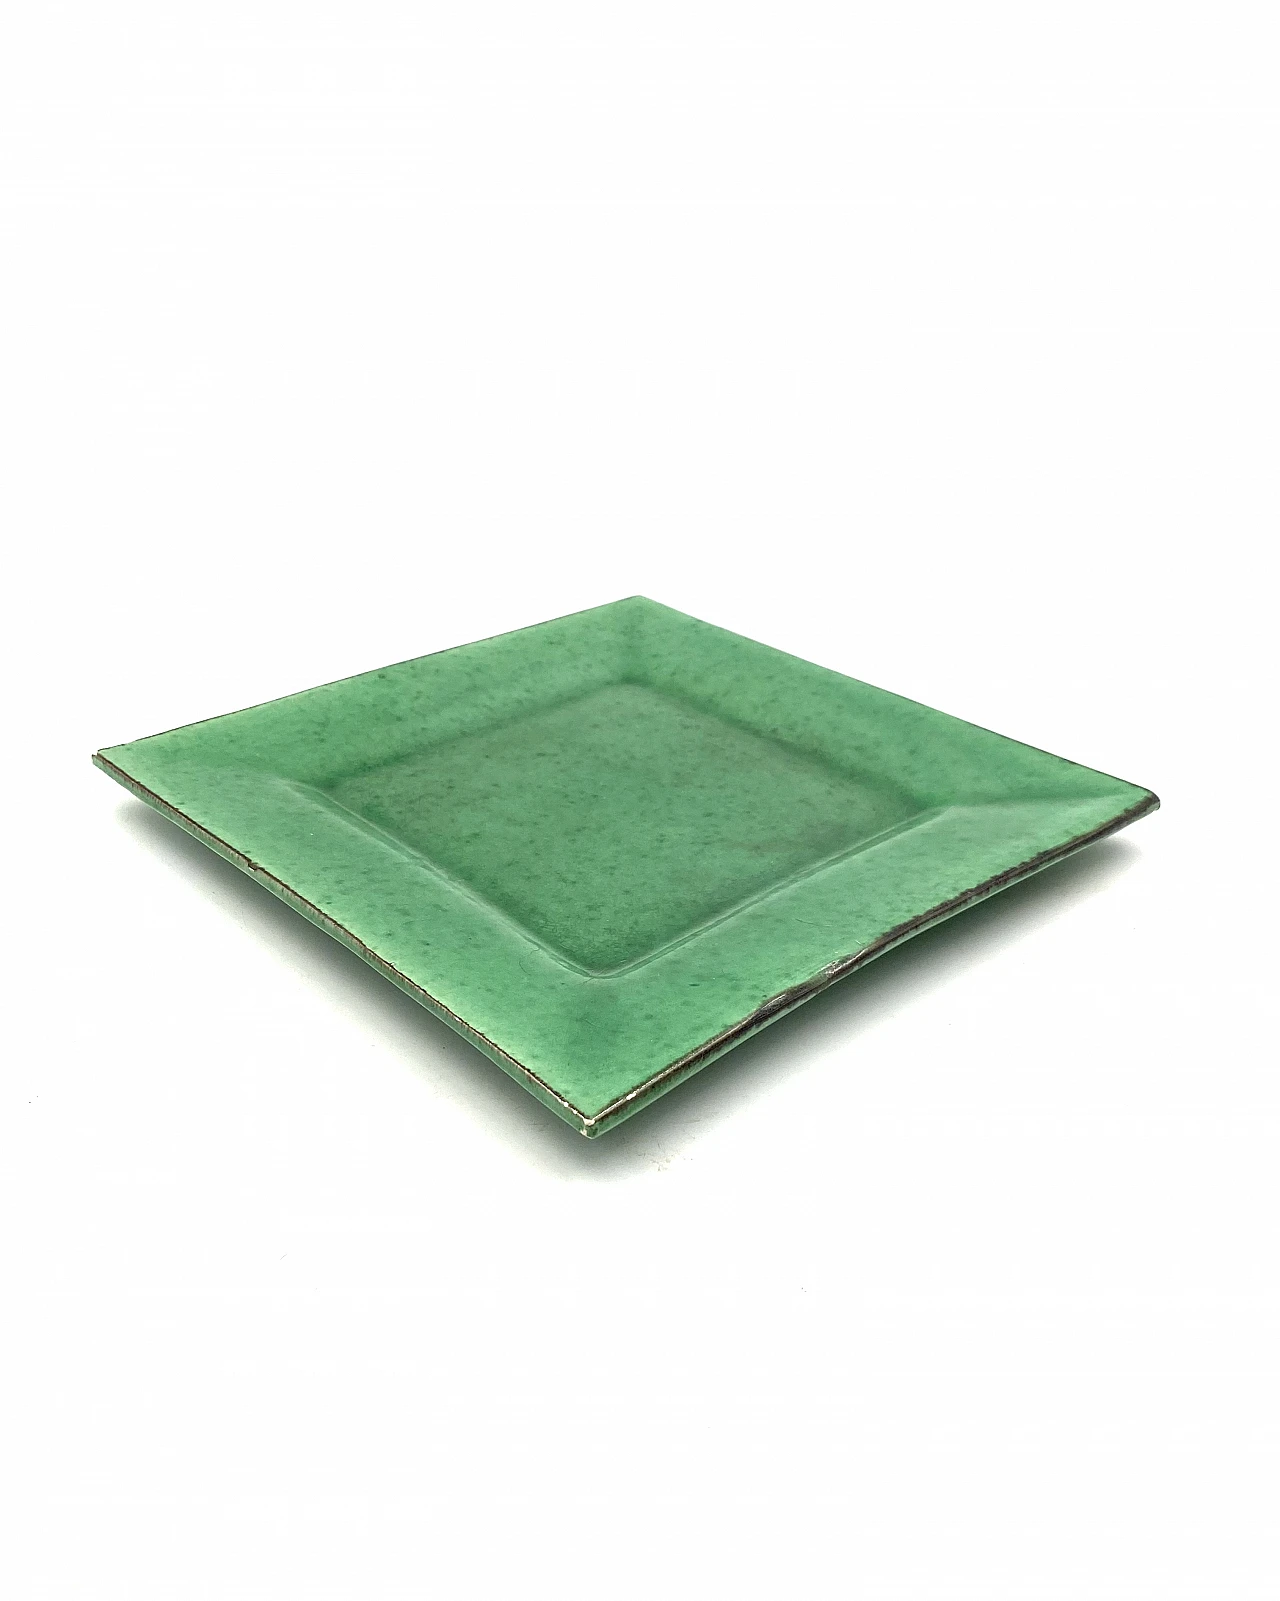 Vide poche in green glazed ceramic, 1960s 16